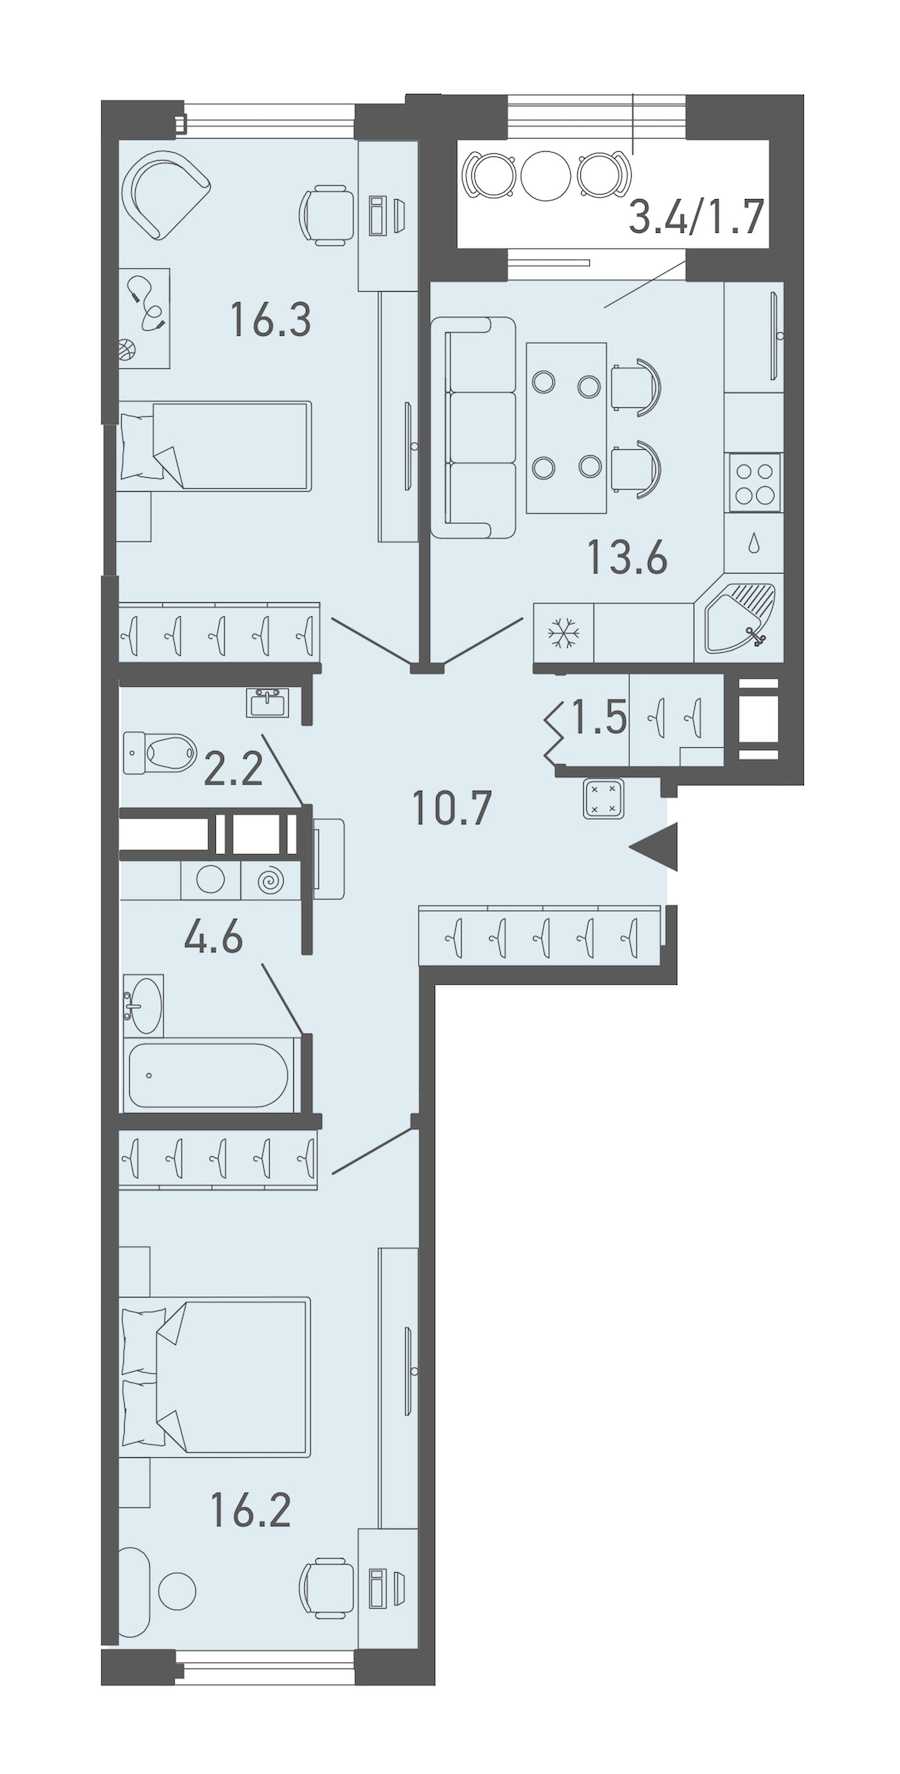 Двухкомнатная квартира в Эталон ЛенСпецСМУ: площадь 66.8 м2 , этаж: 3 – купить в Санкт-Петербурге